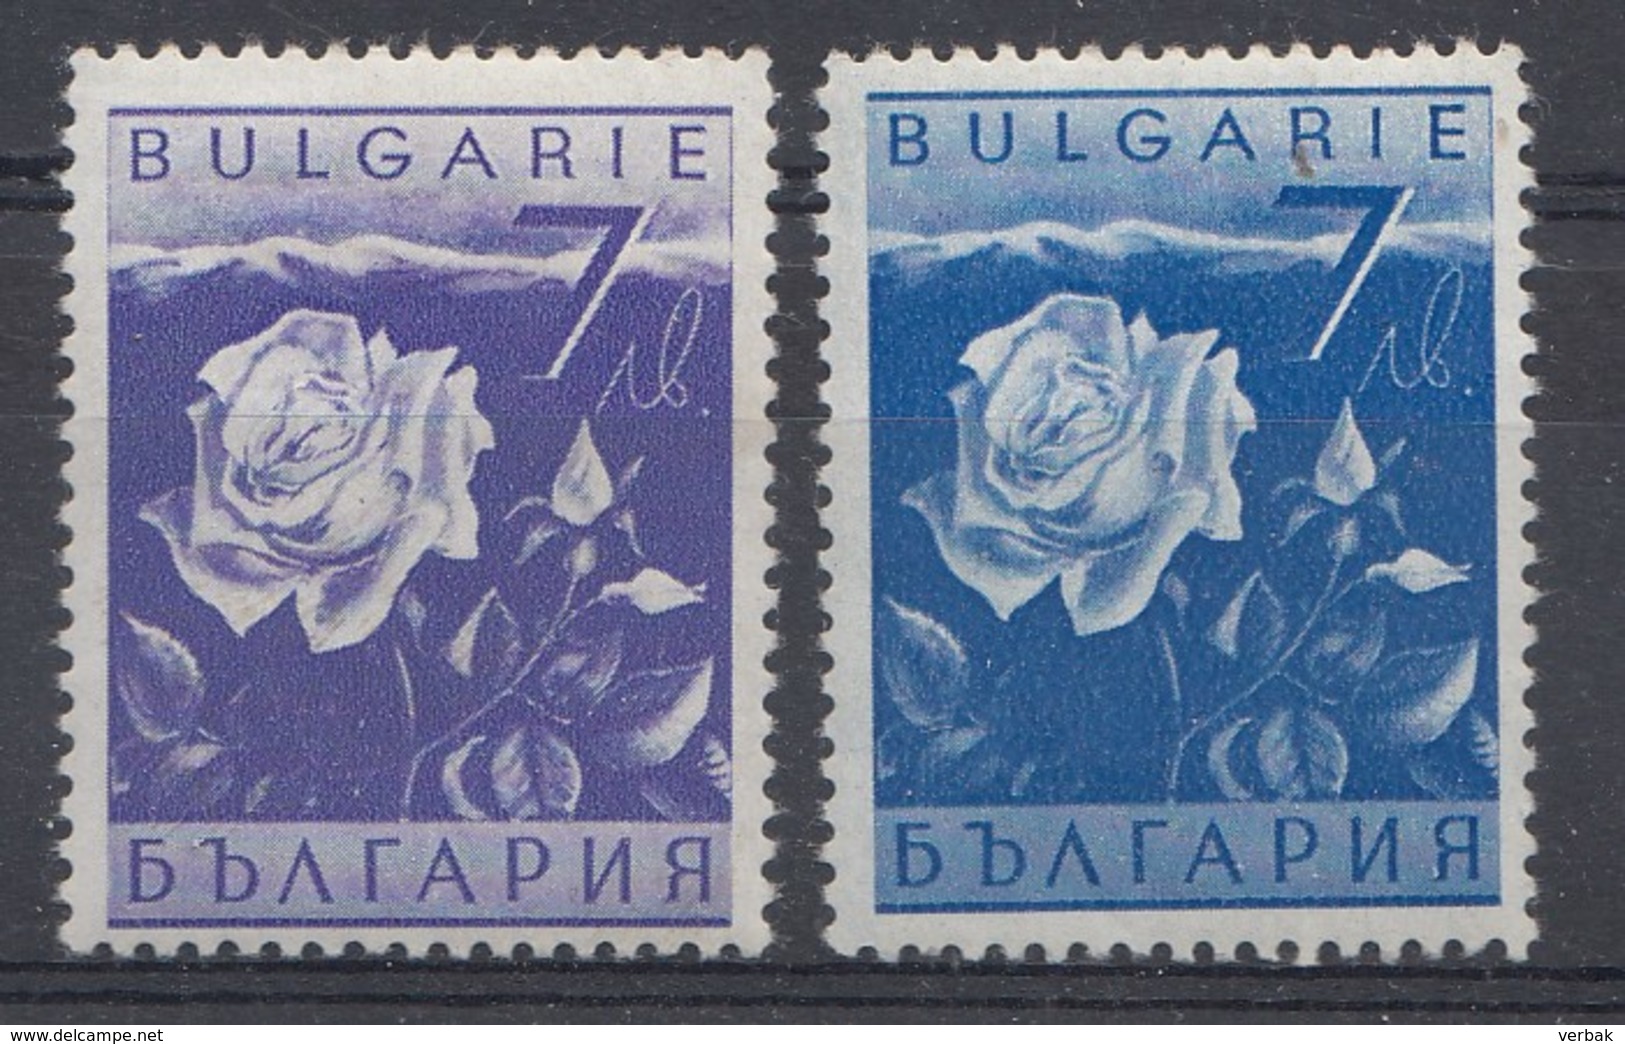 Bulgarien 1938  MI.nr: 336-337   Bulgarische Wirtschaft  Neuf  Avec  Charniere - Unused Stamps